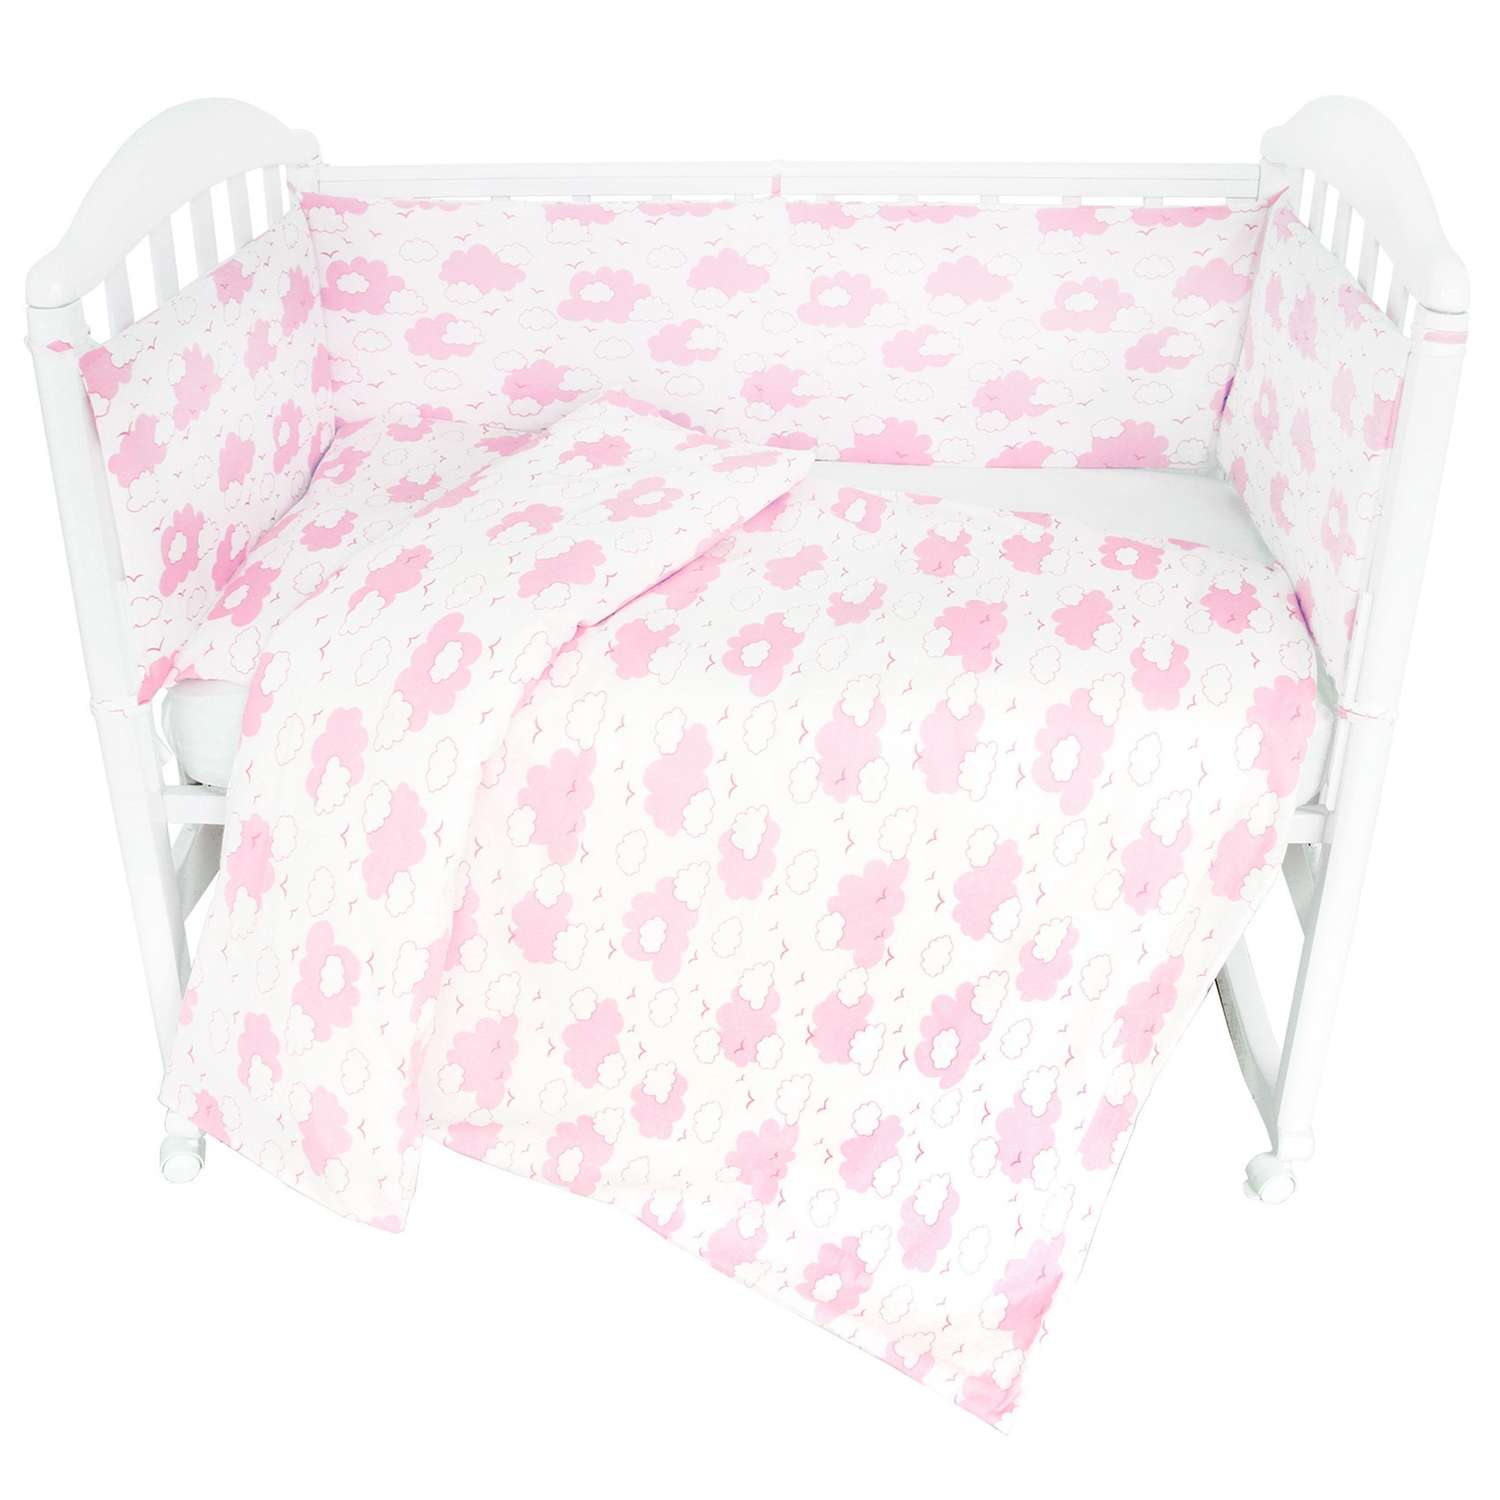 Комплект постельного белья Споки Ноки Облака Розовый 3предмета DMC111/6RO - фото 1